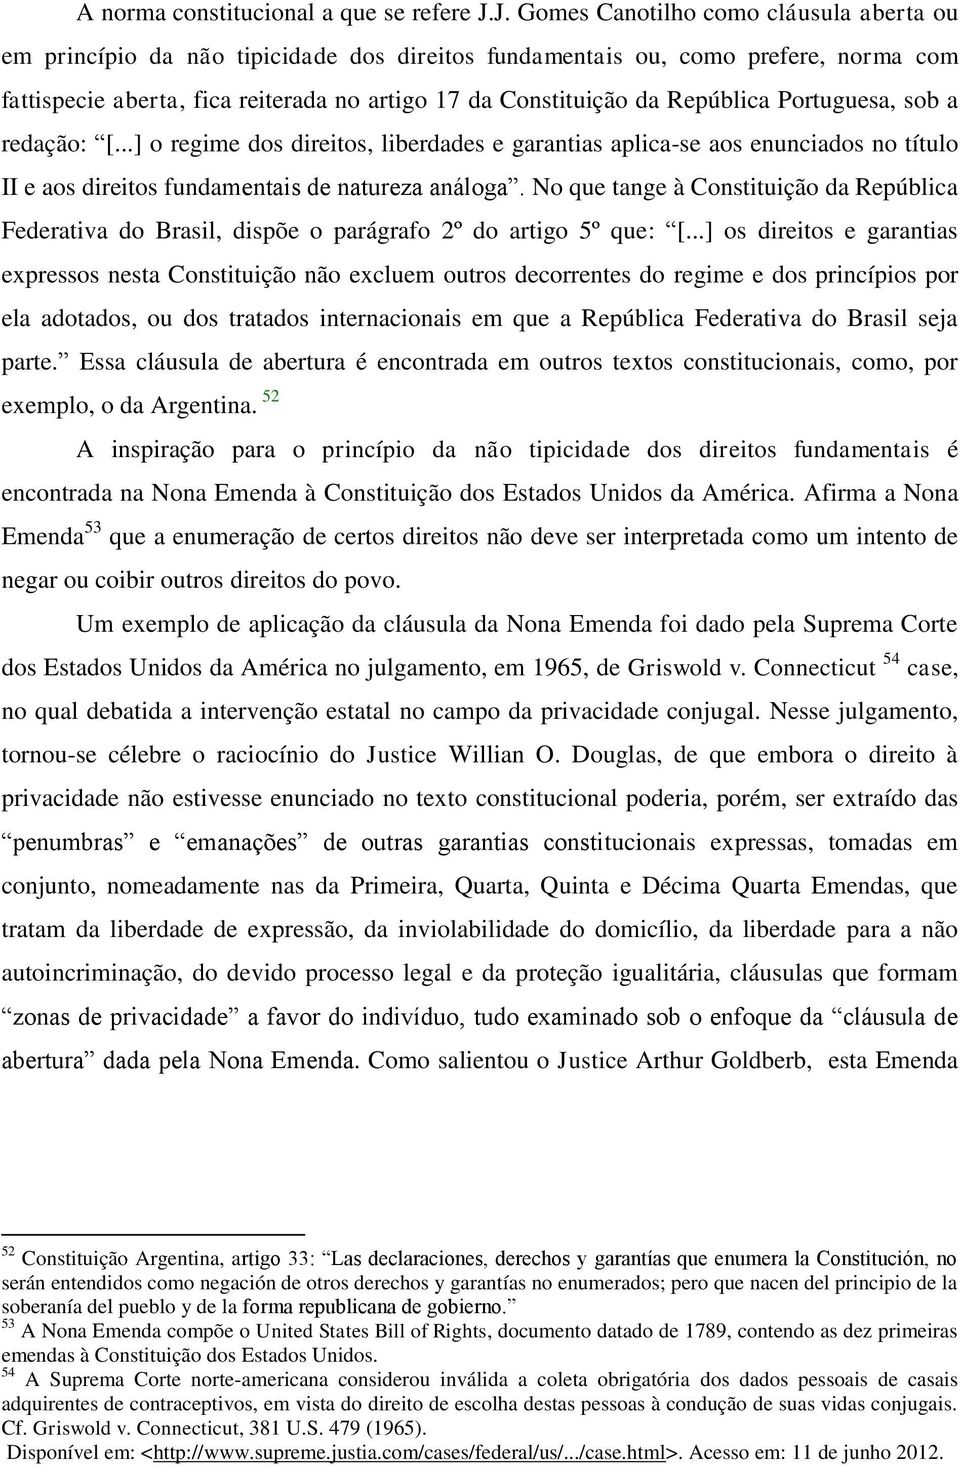 República Portuguesa, sob a redação: [...] o regime dos direitos, liberdades e garantias aplica-se aos enunciados no título II e aos direitos fundamentais de natureza análoga.